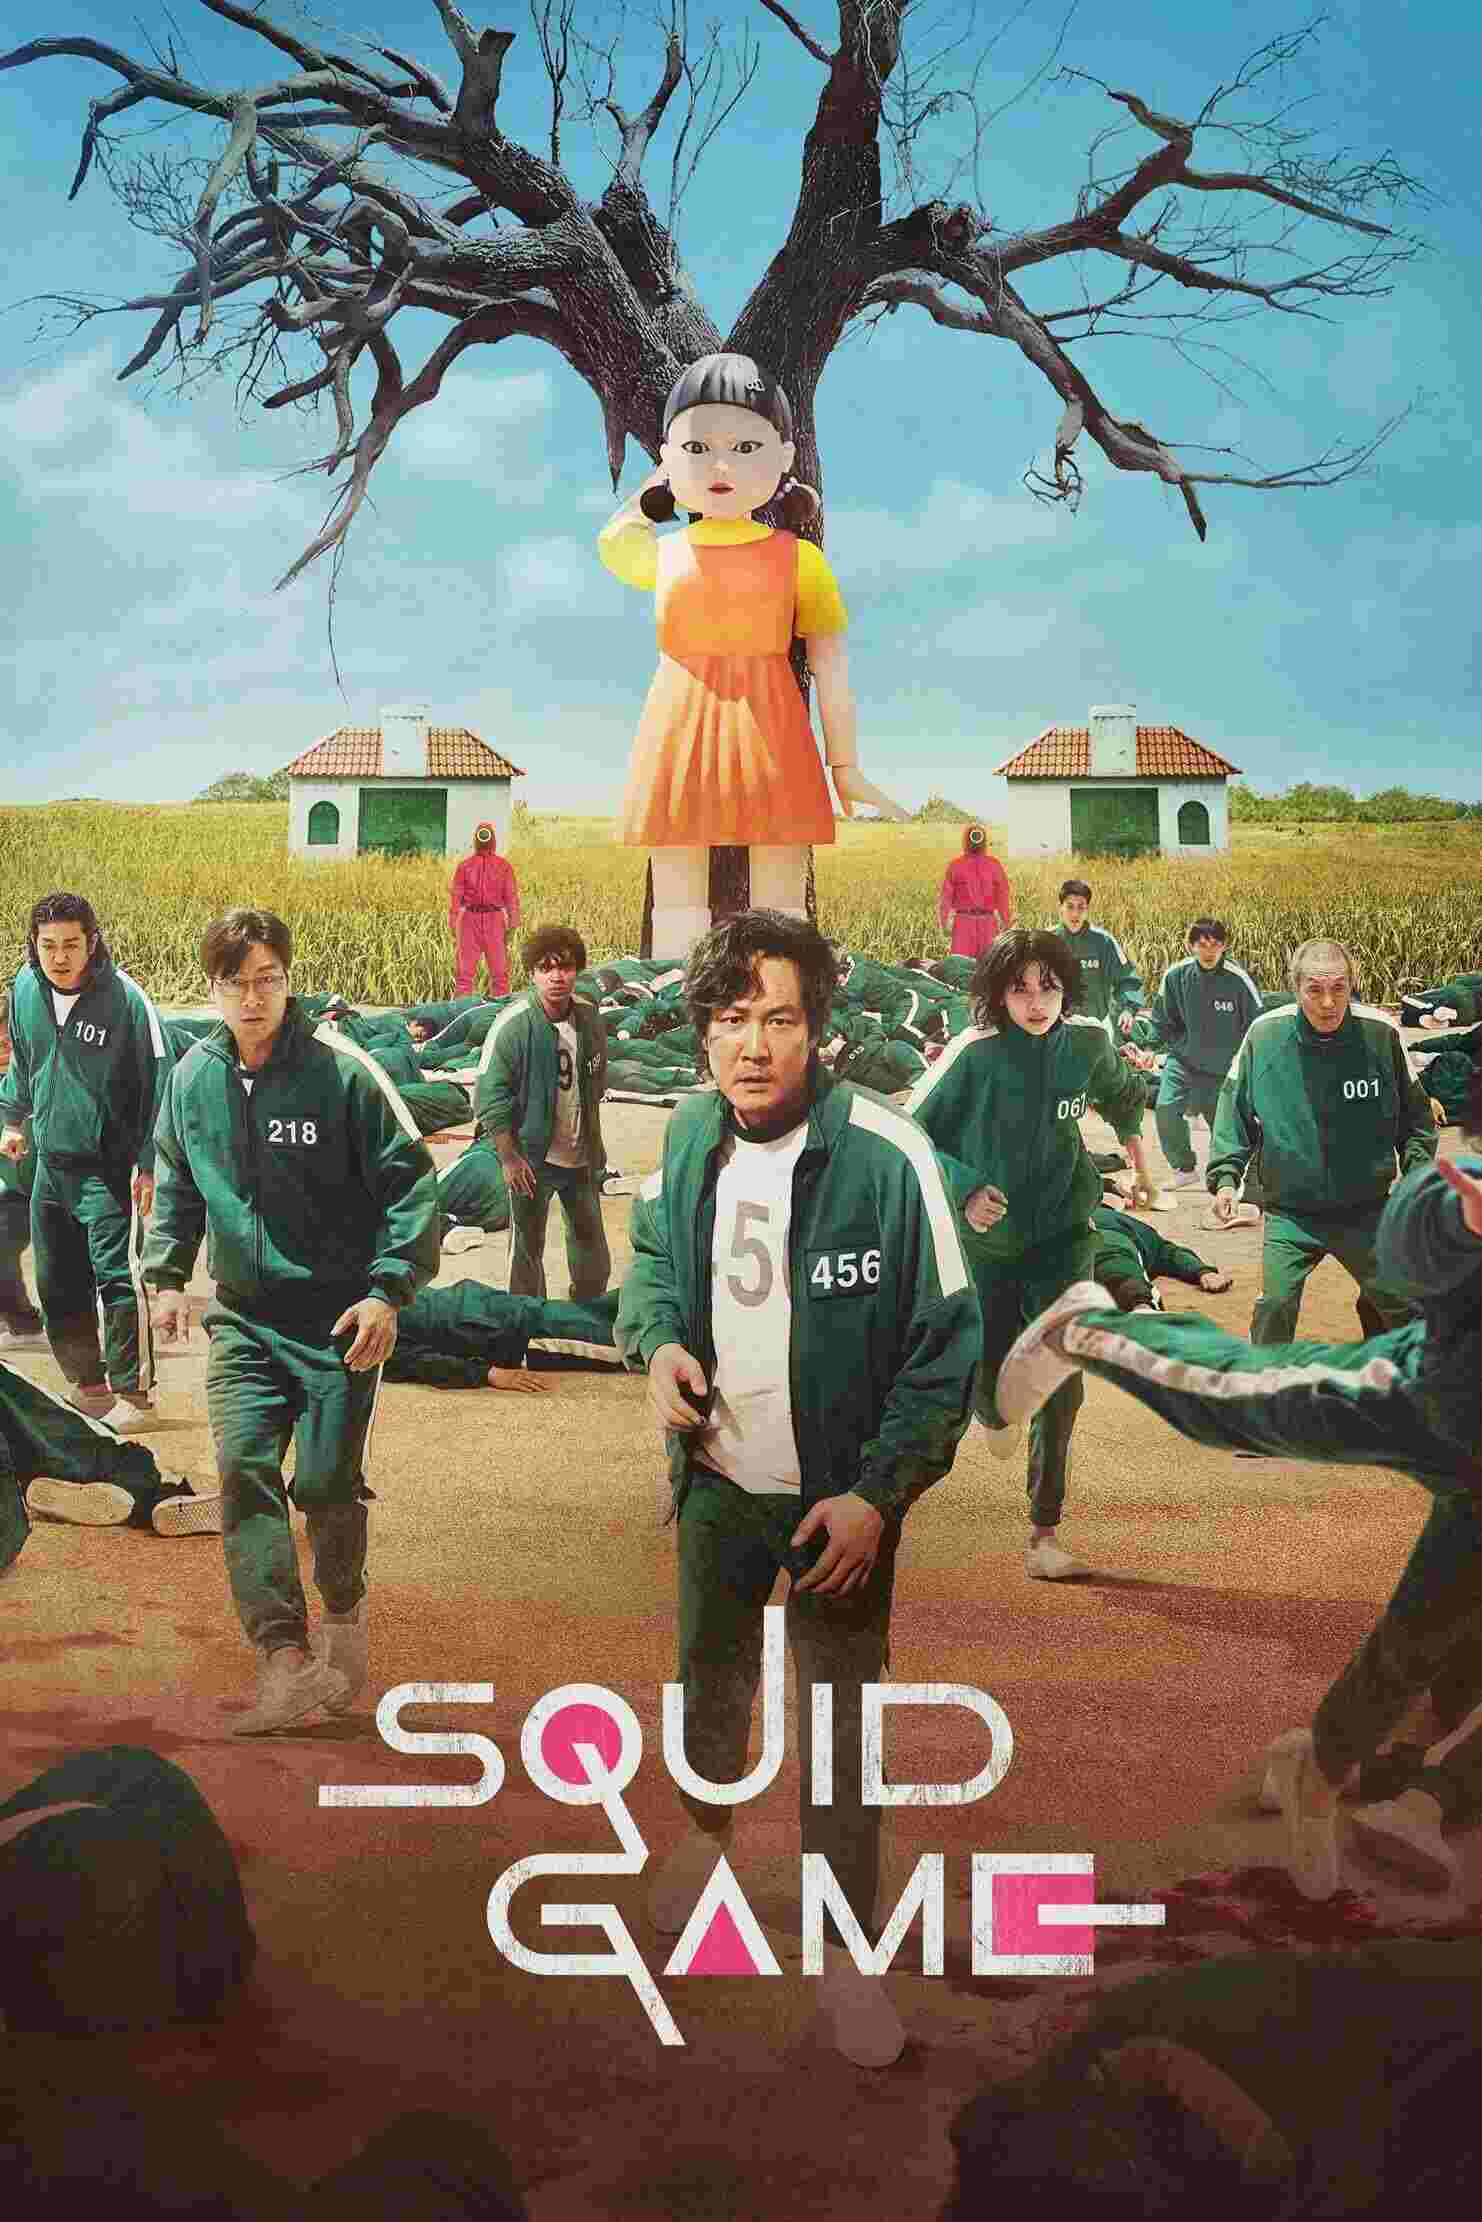 Squid Game (2021) Lee Jung-jae